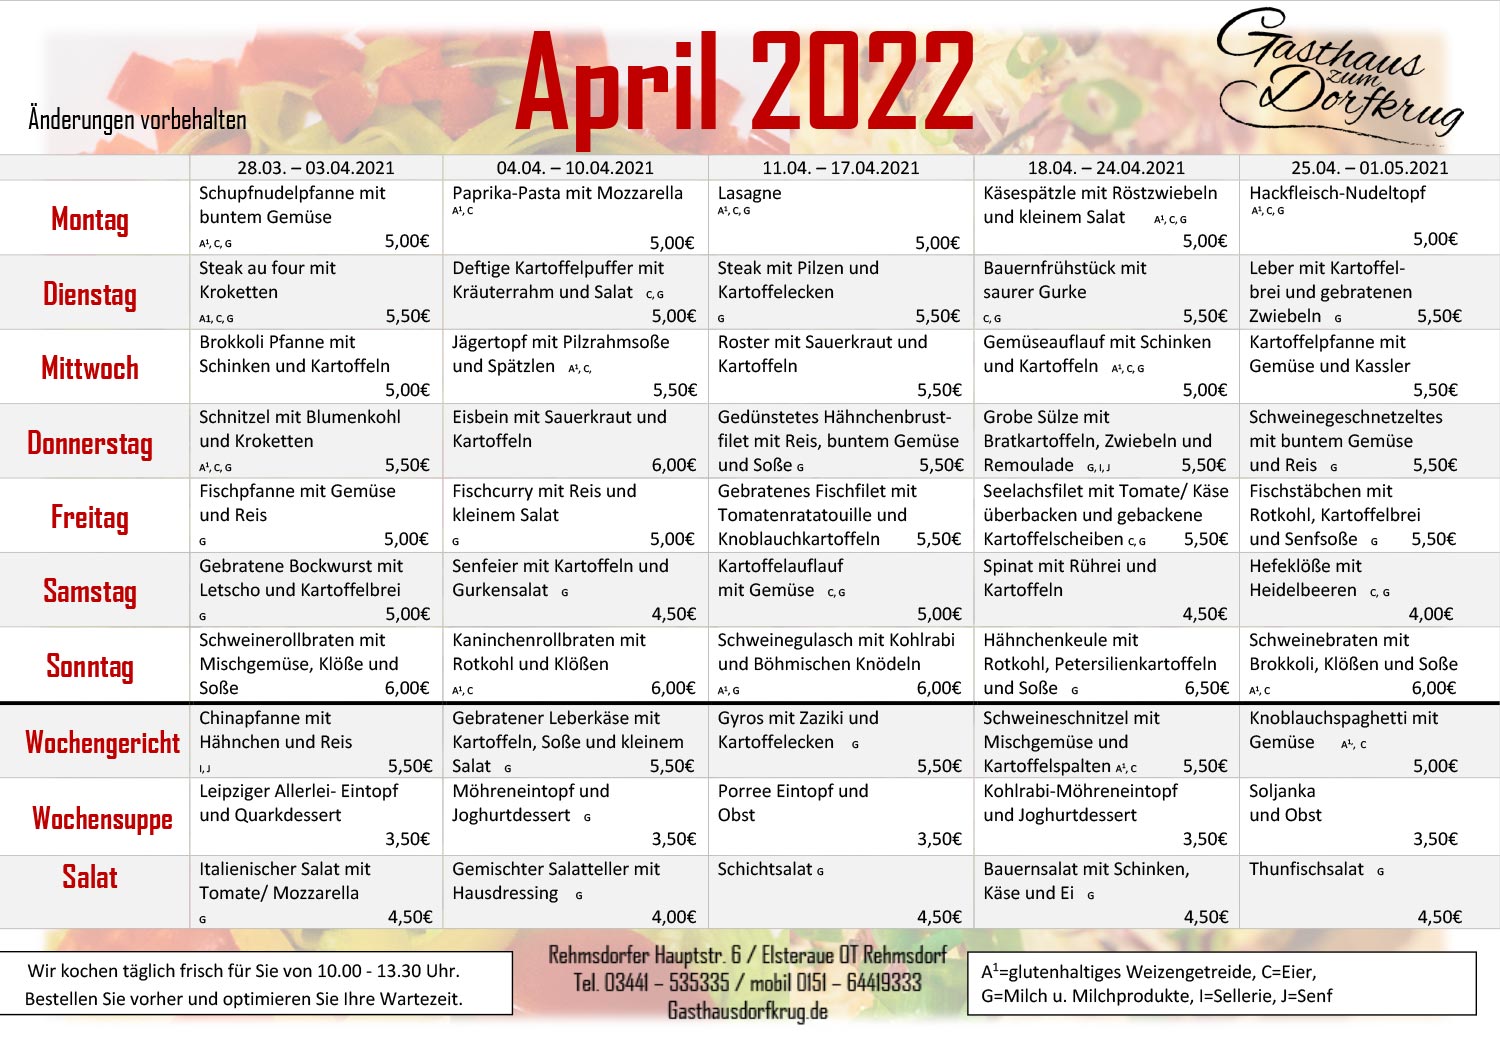 Gasthaus Dorfkrug Abo Essen April 2022